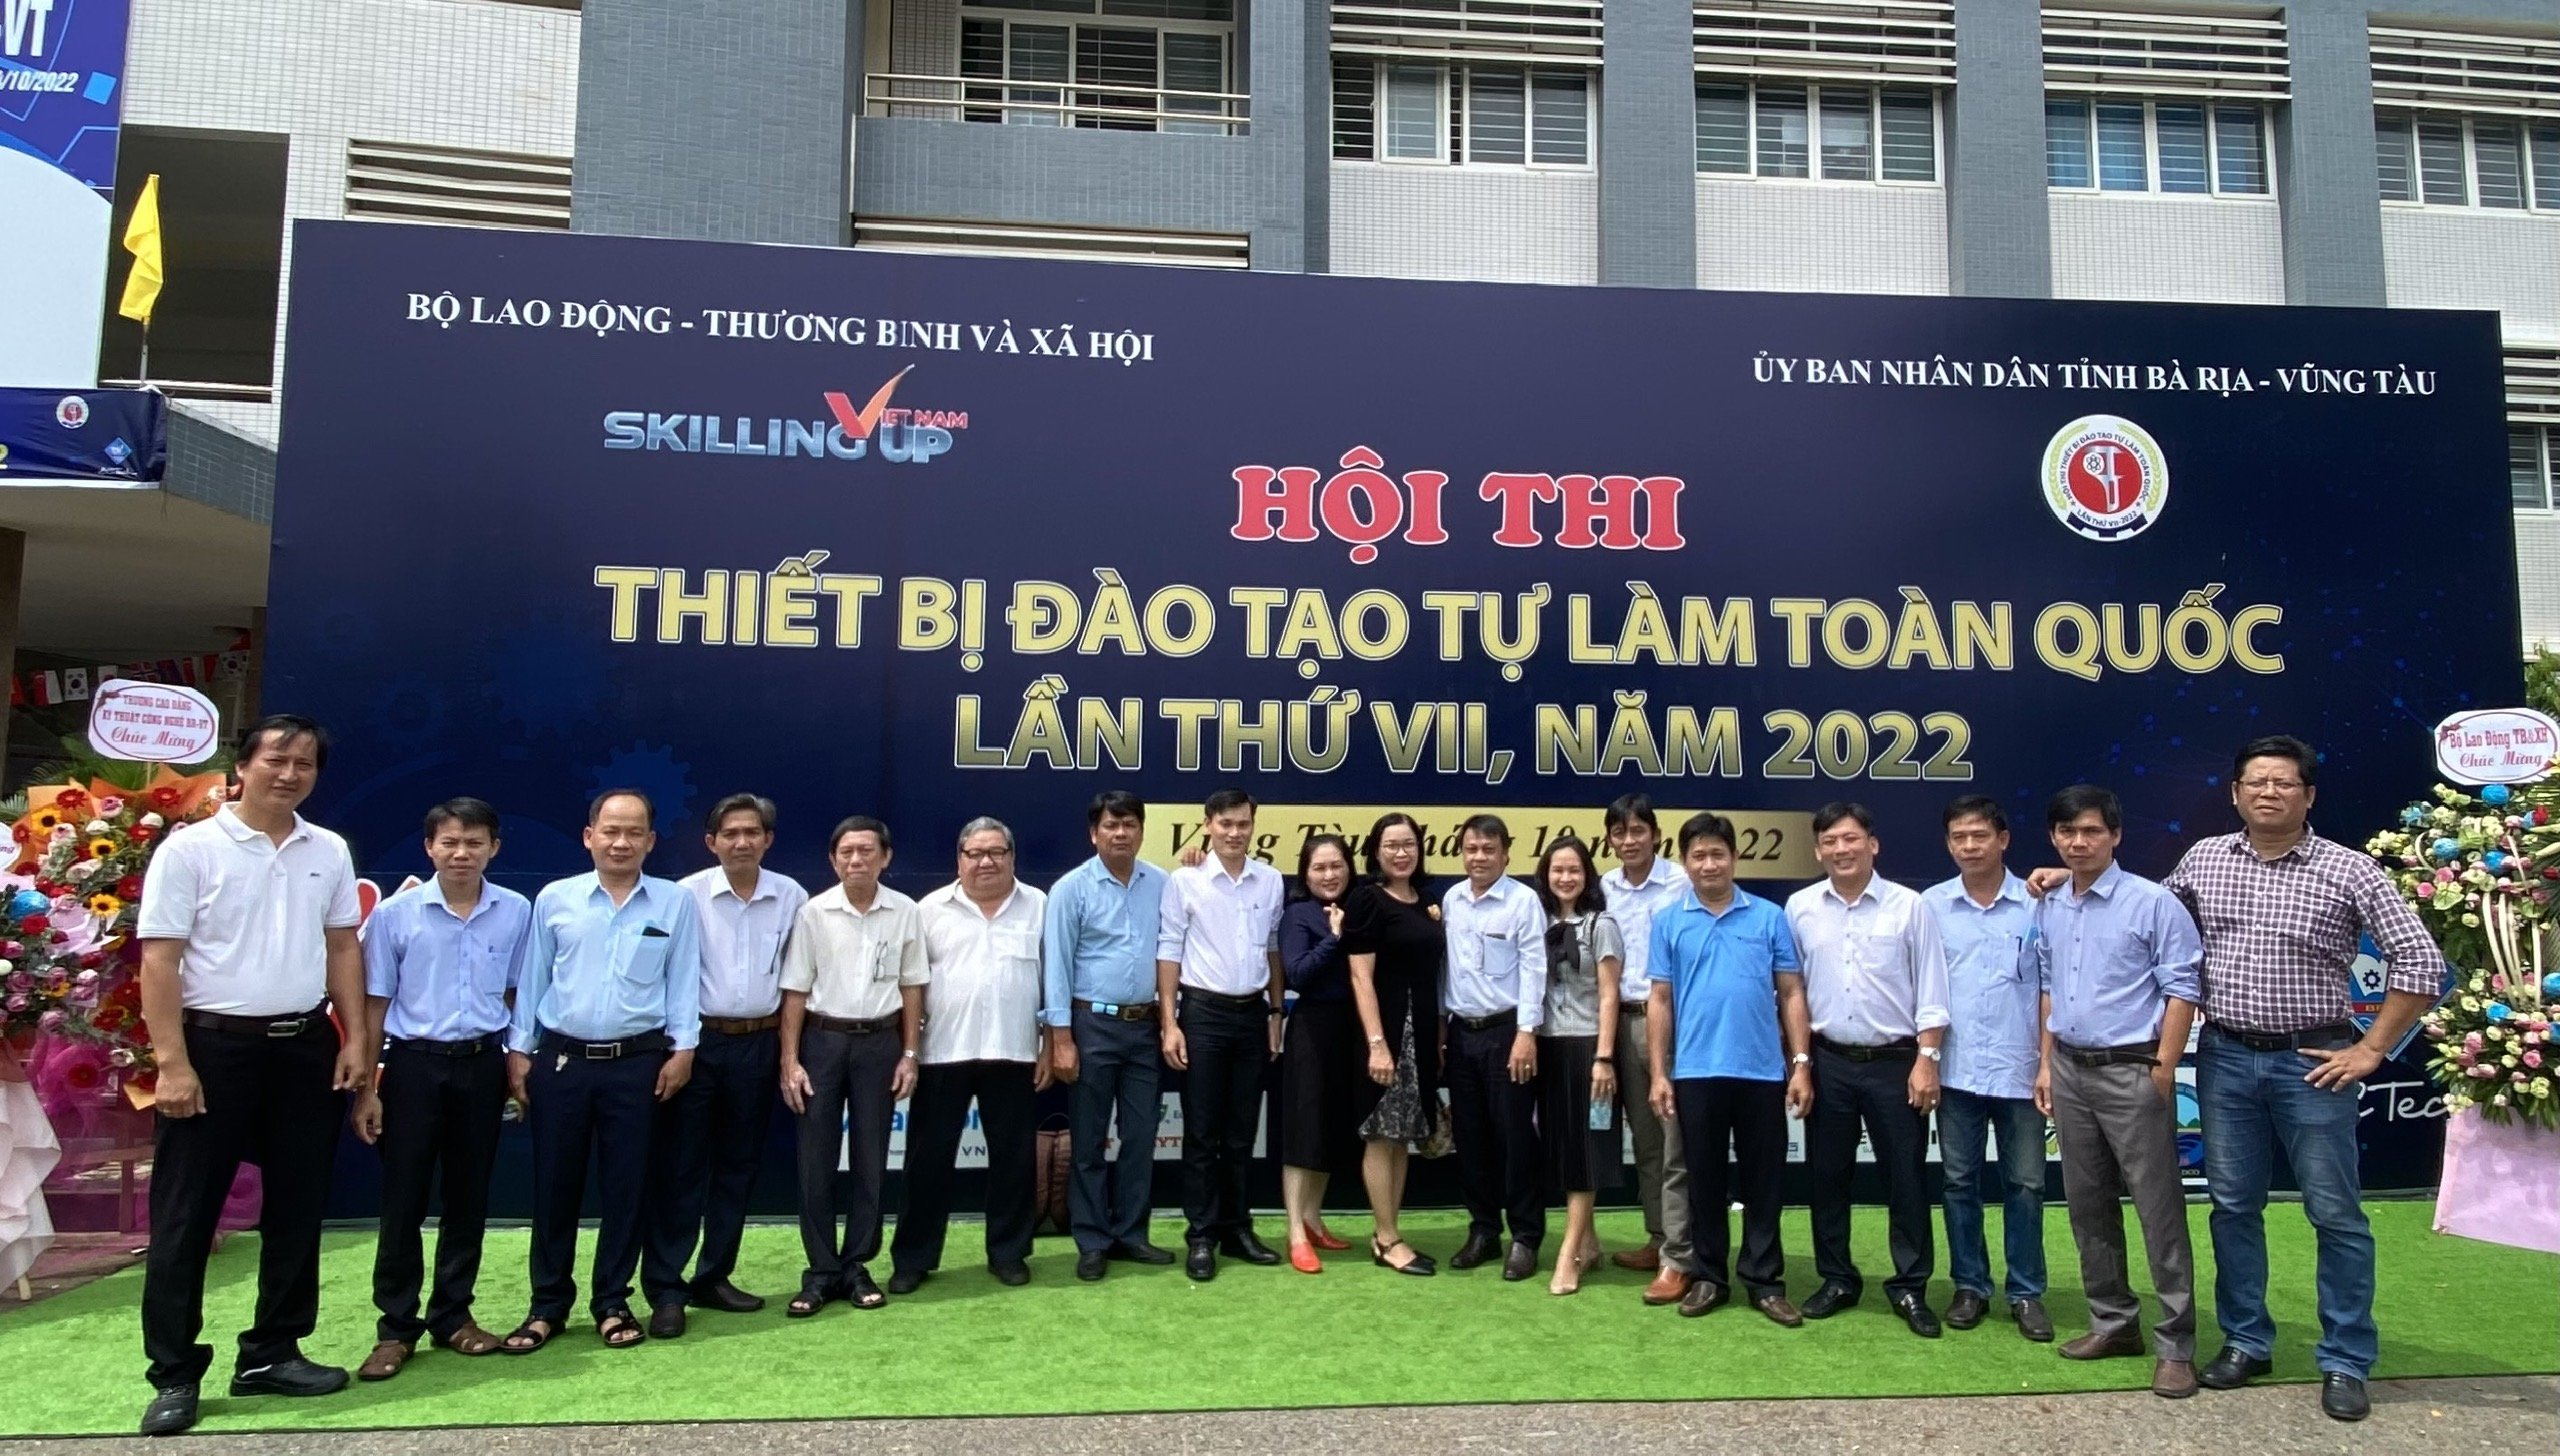 Trường Cao đẳng nghề Tây Ninh tham gia hội thi thiết bị đào tạo tự làm toàn quốc lần thứ VII năm 2022